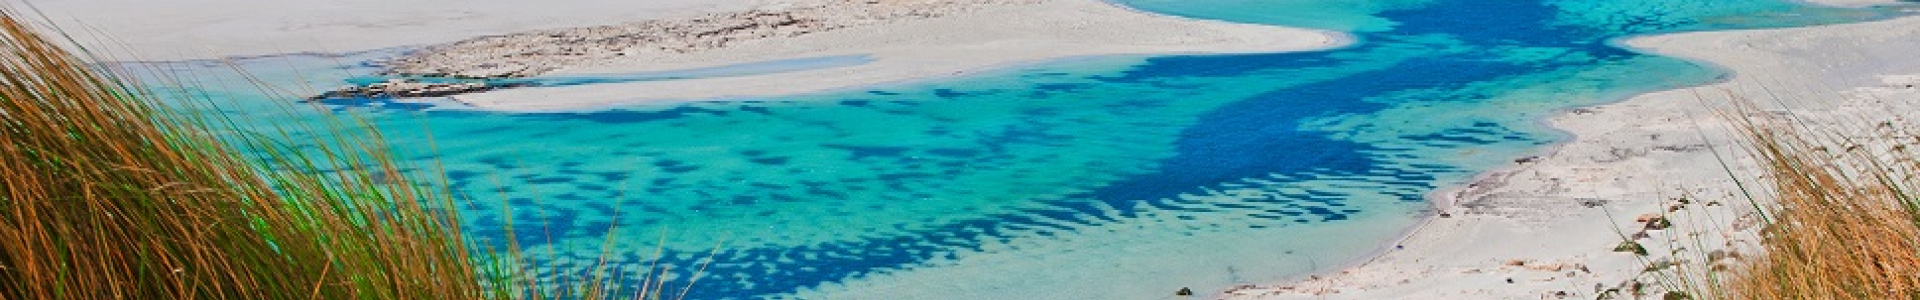 Partir pas cher : séjours vacances d'été à prix minis, Crète, Baléares...